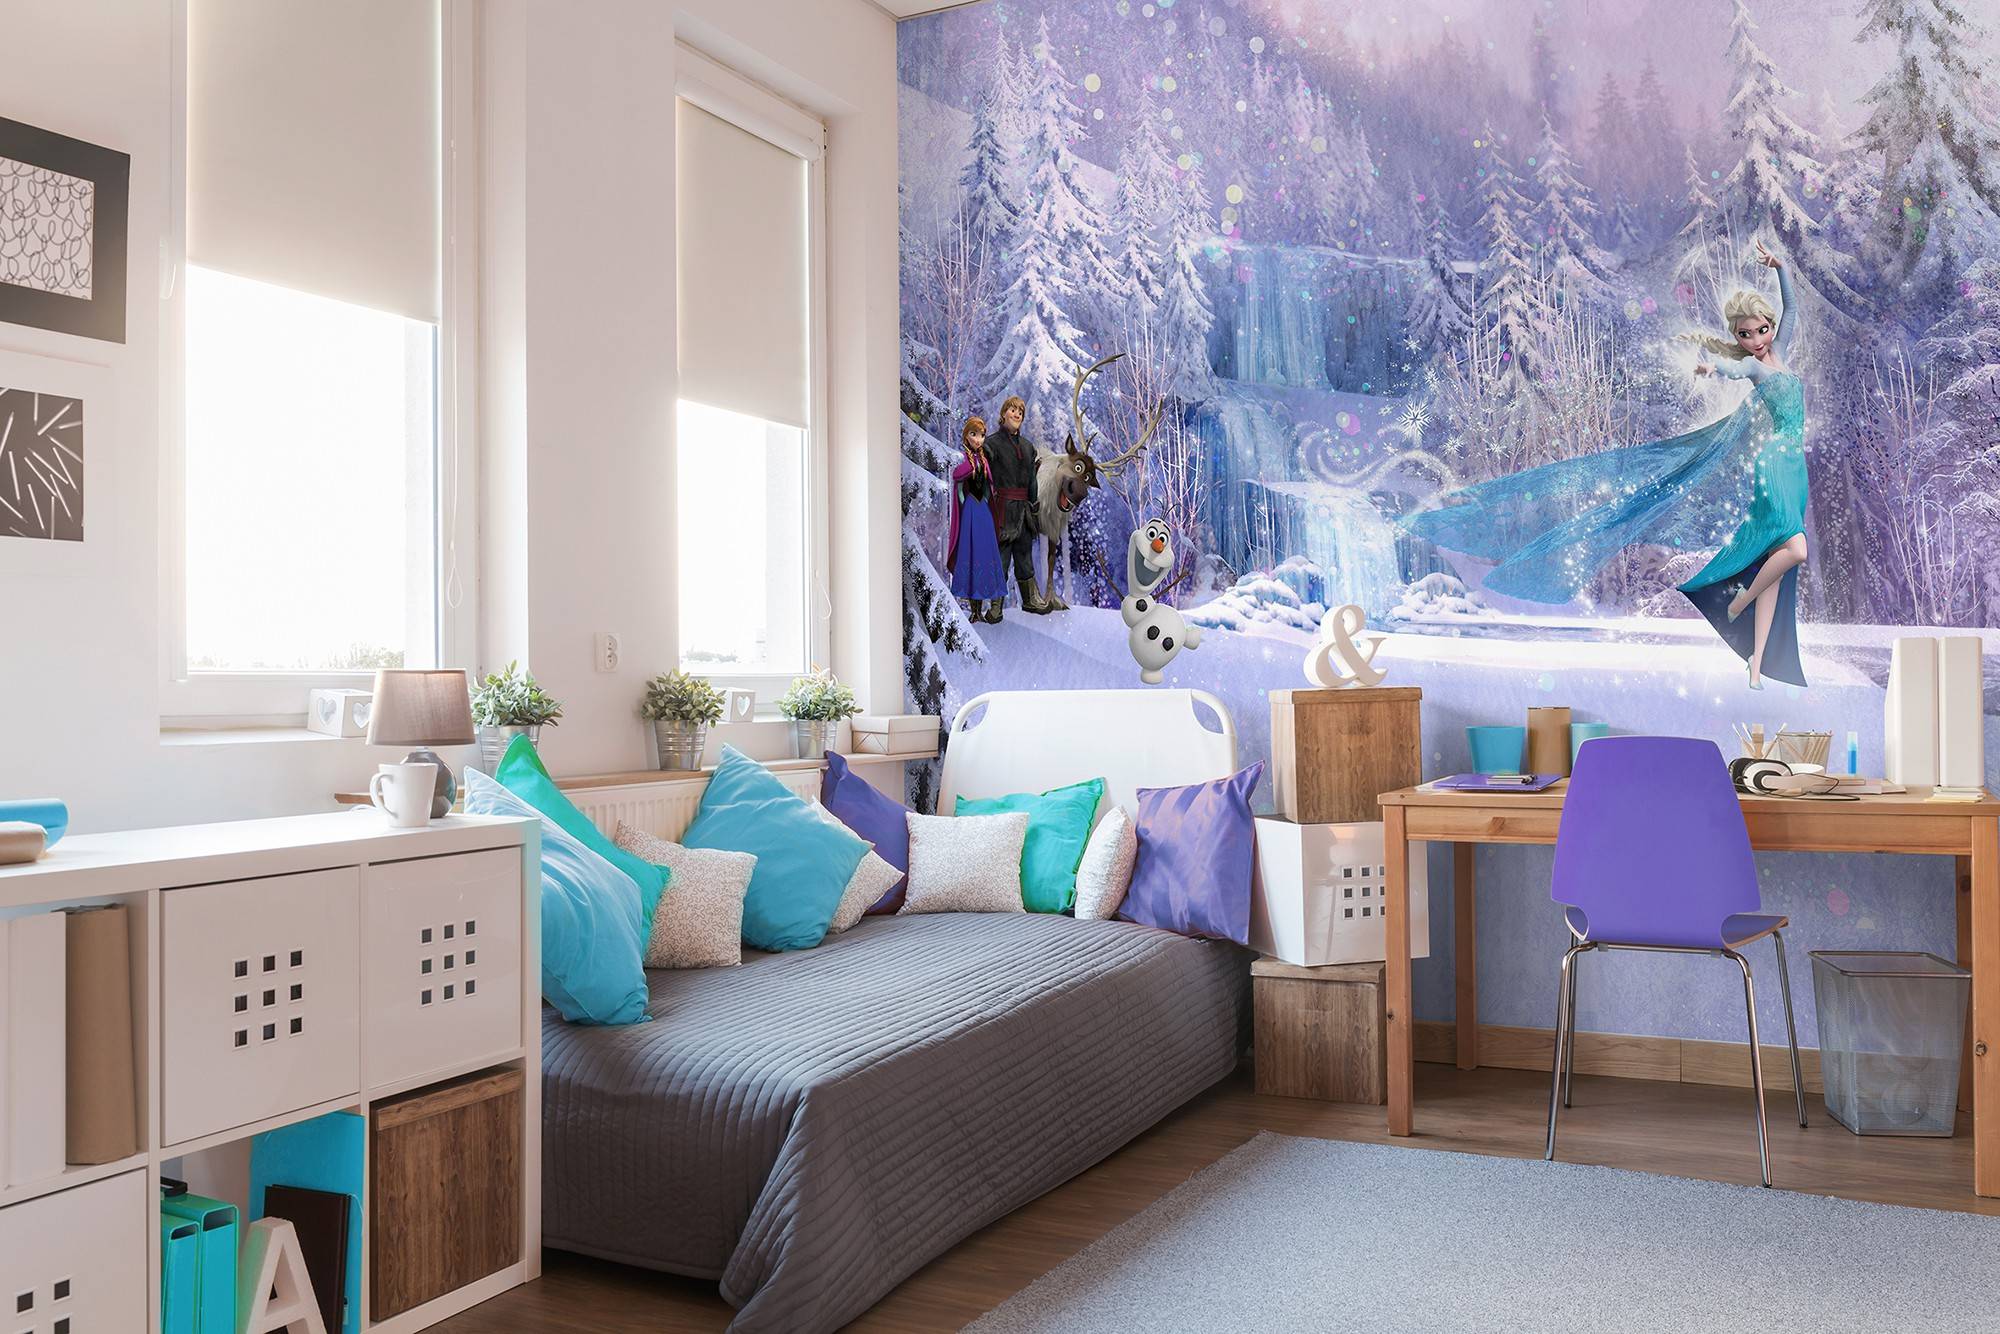 frozen wallpaper for bedroom,room,furniture,bedroom,bed,interior design